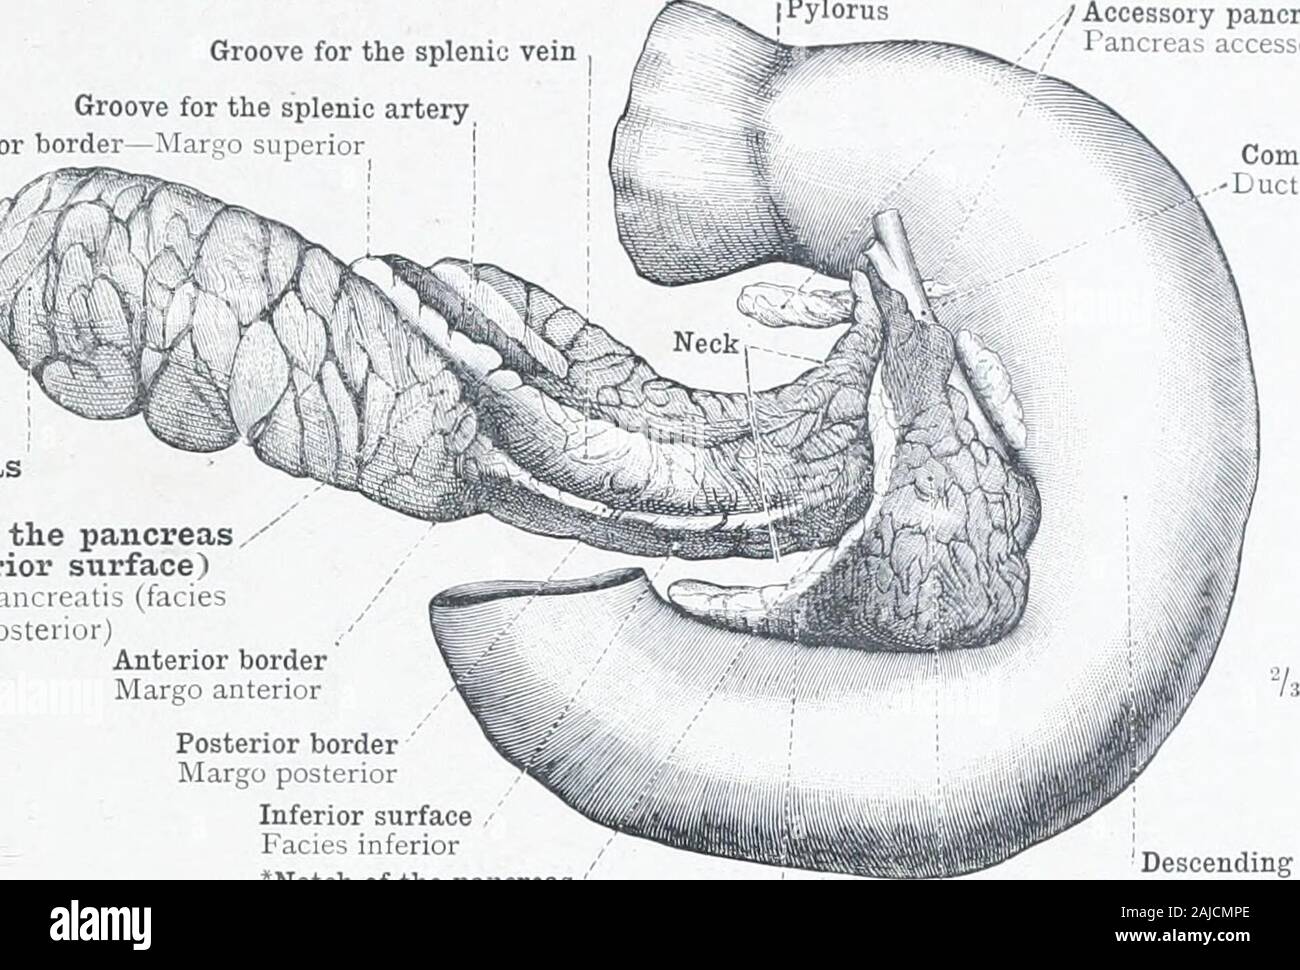 Un atlas de l'anatomie humaine pour les étudiants et les médecins de la muqueuse . glandsof le canal biliaire commun de l'orifice du conduit pancréatique,ou le conduit de Wirsung duodenale (Diverticule Vateri), theduodenal meckel (soi-disant),avec son système particulier de plis- - extrémité inférieure du pli longitudinal, ou caruncula major, du duo- denum- FiG. 719.-Le duodénum ayant été excisée, une incision longitudinale a été faite dans le CCS-likeDilatation, Meckel duodenale (Vateri),^ pour montrer les plis transverses imbriquées dans itsInterior. Incisions longitudinales ont également été réalisés dans la basse Ext Banque D'Images